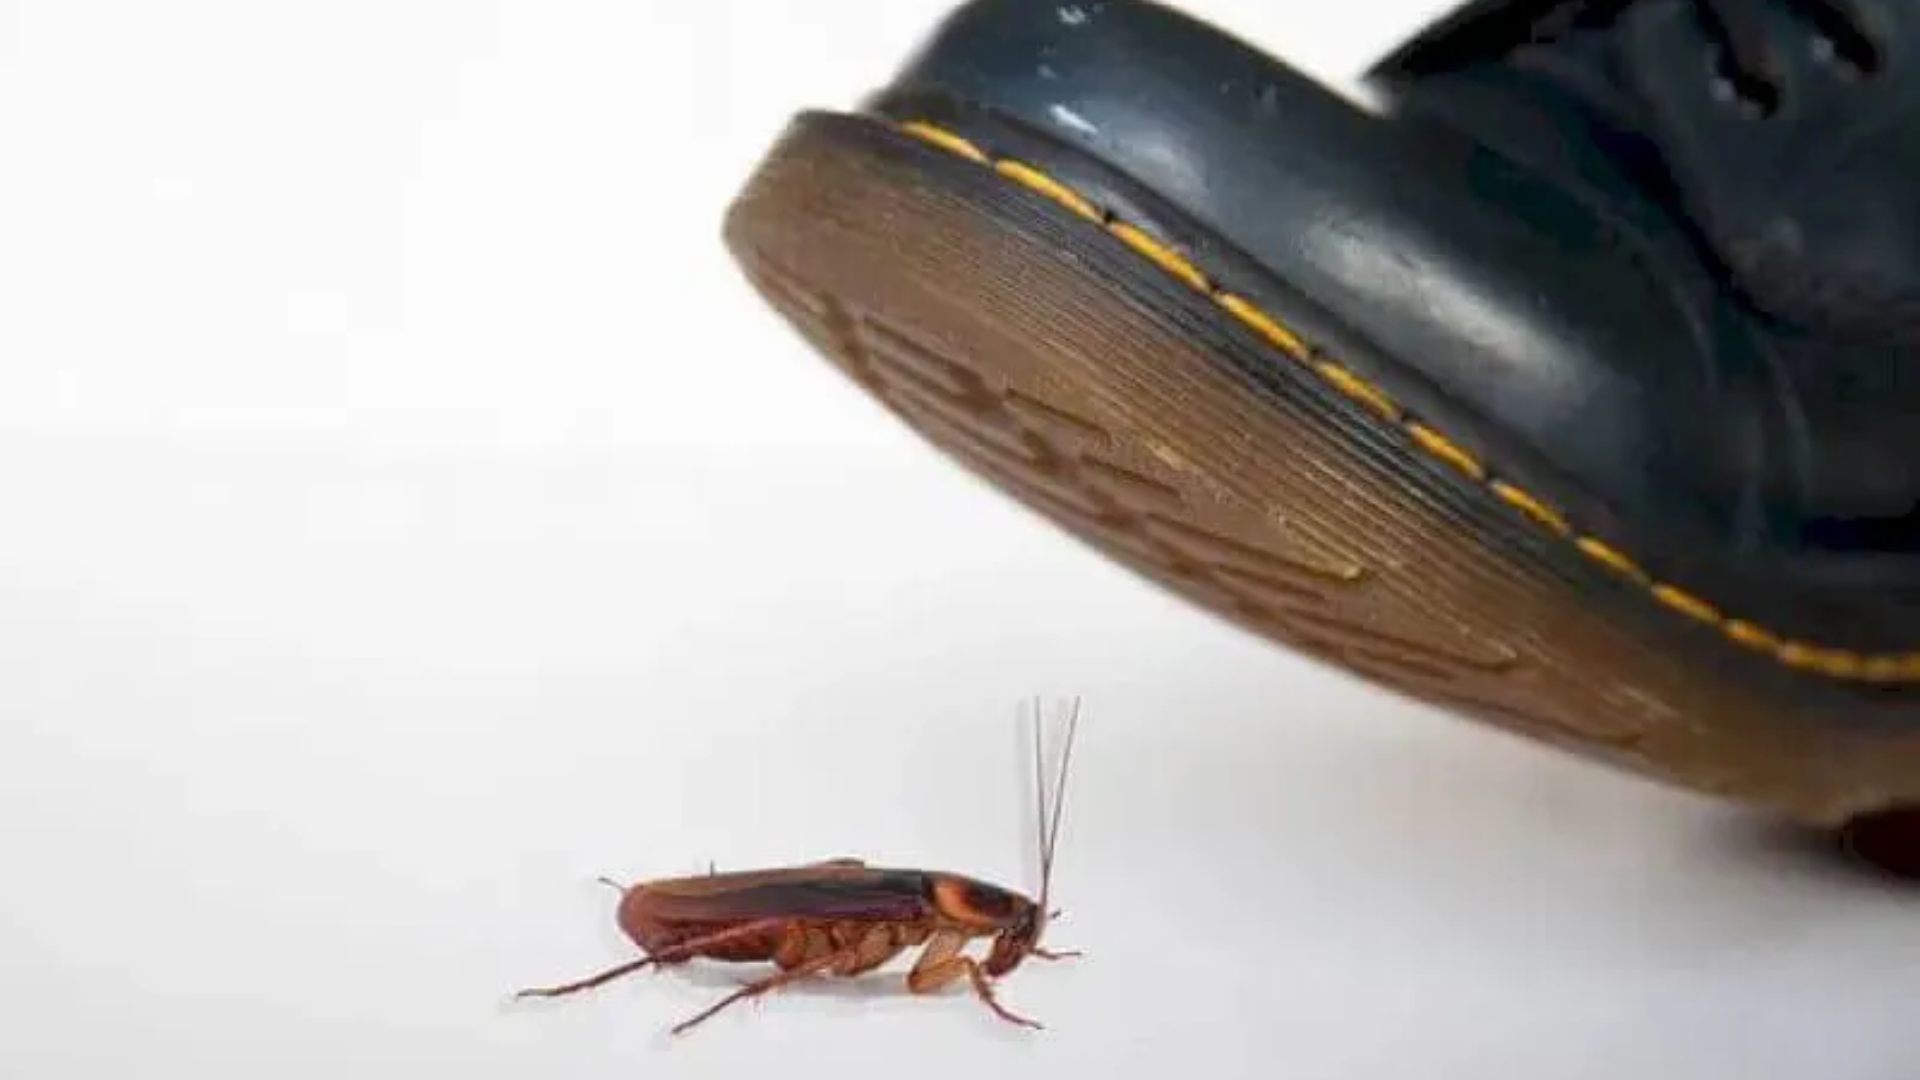 ¡Cuidado! aplastar una cucaracha puede desencadenar riesgos en la salud